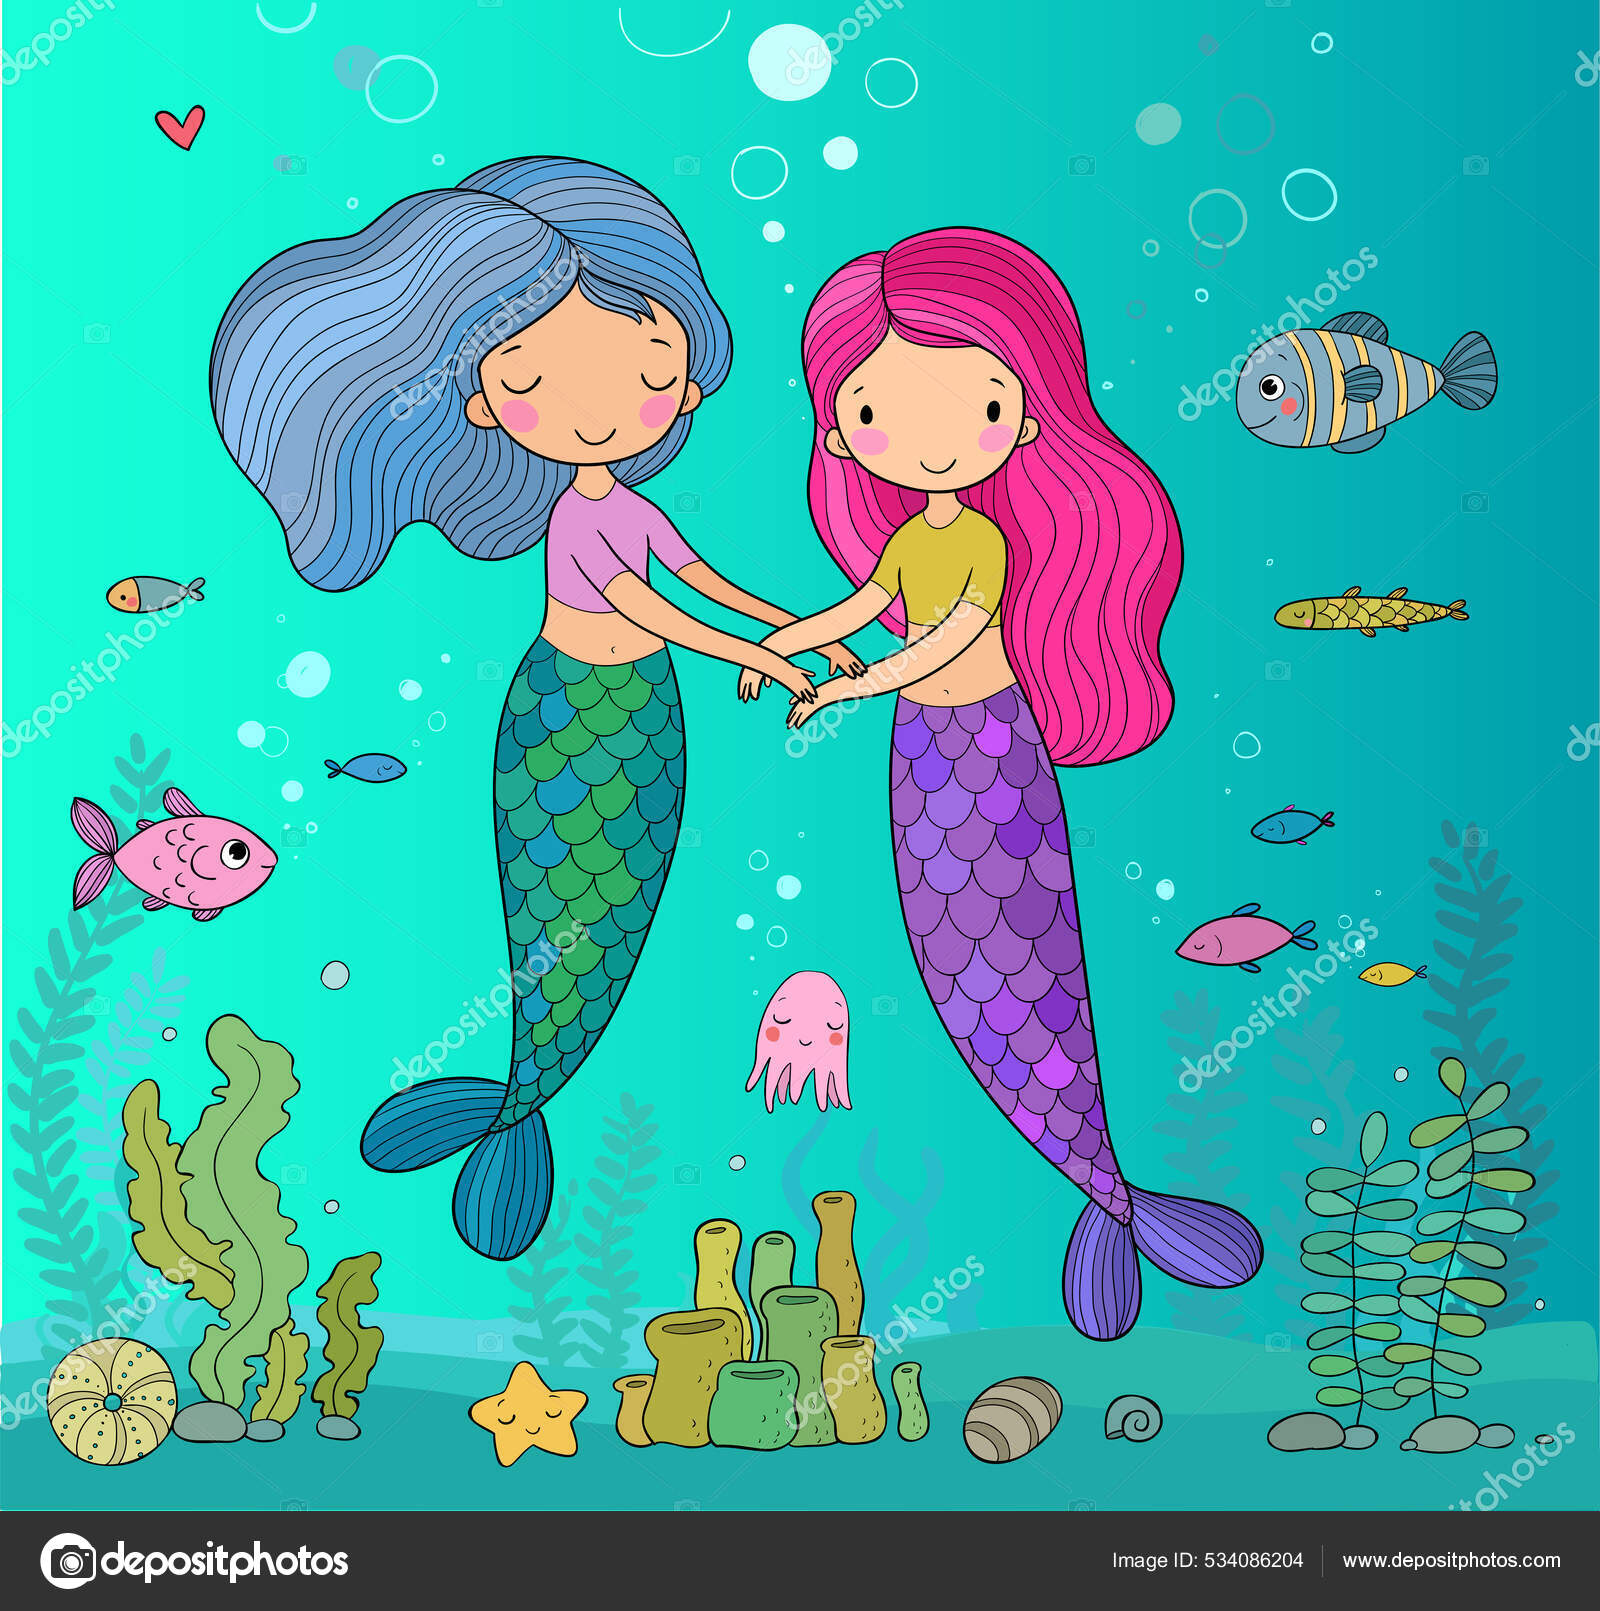 Ute little mermaids. cartoon girls with fish tails. Marine theme